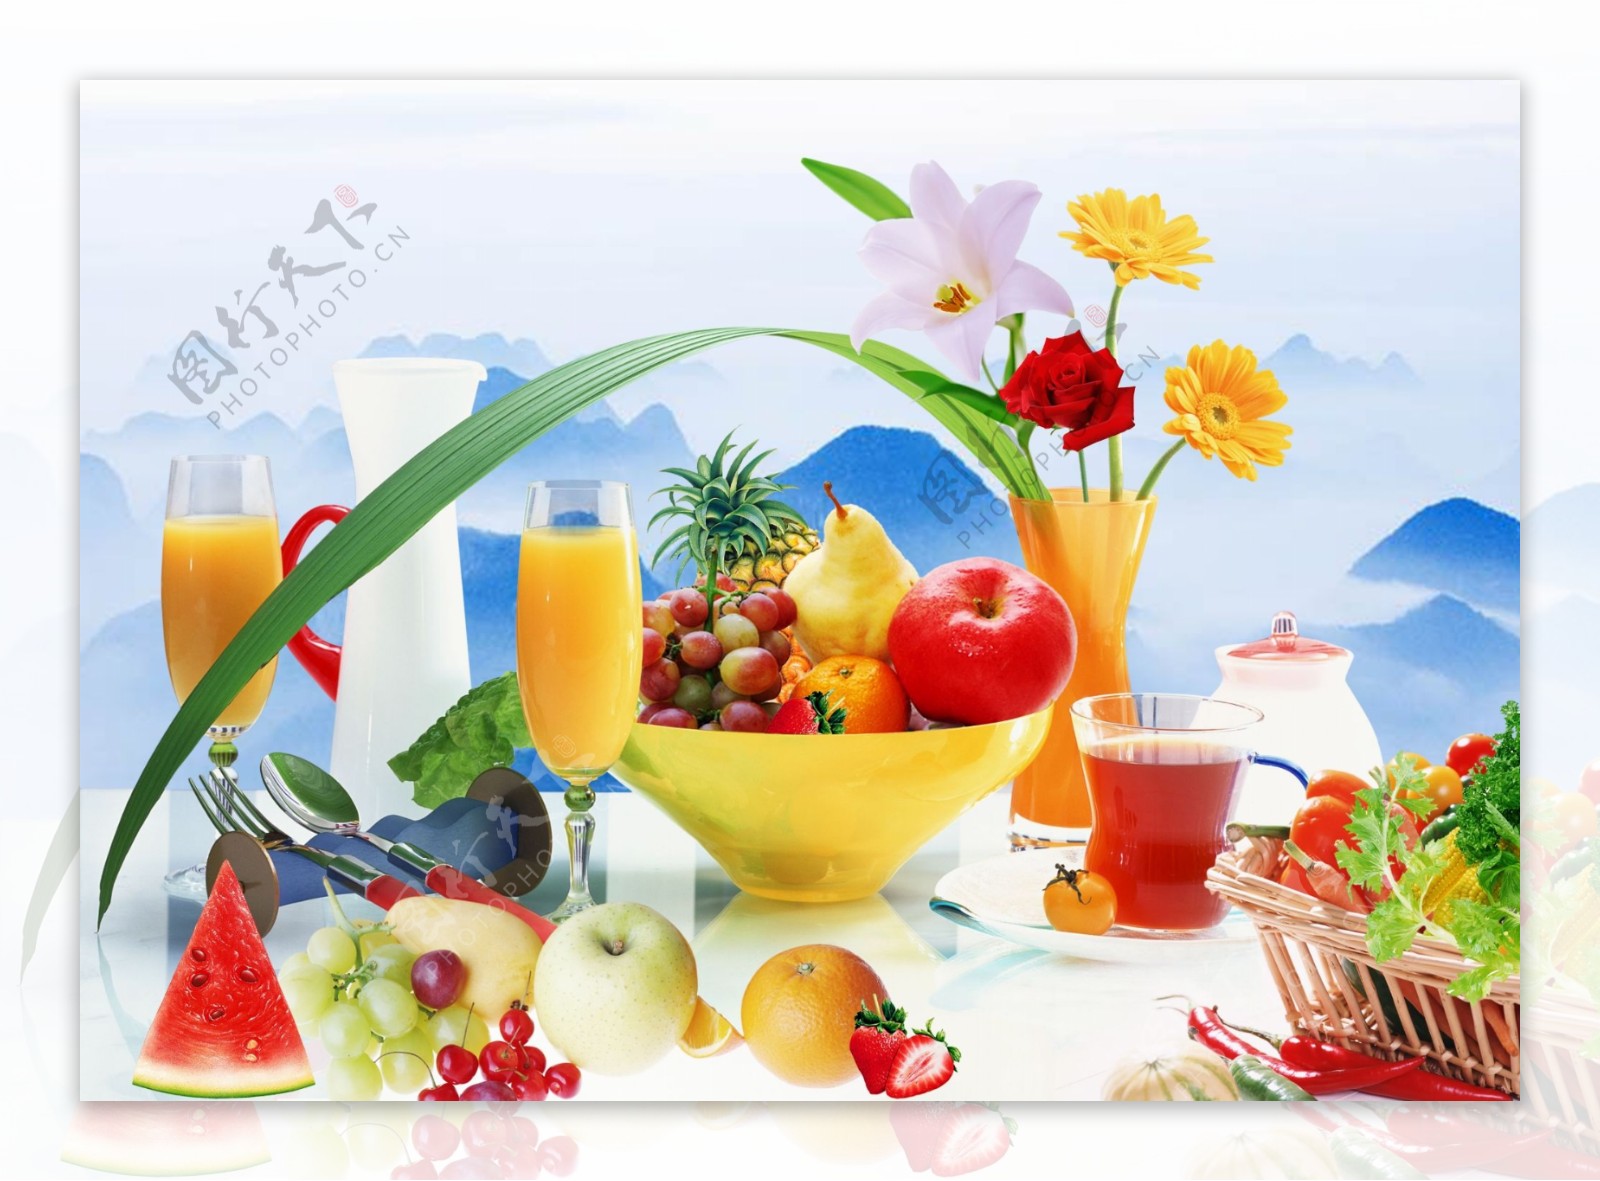 水果与蔬菜广告设计素材图片